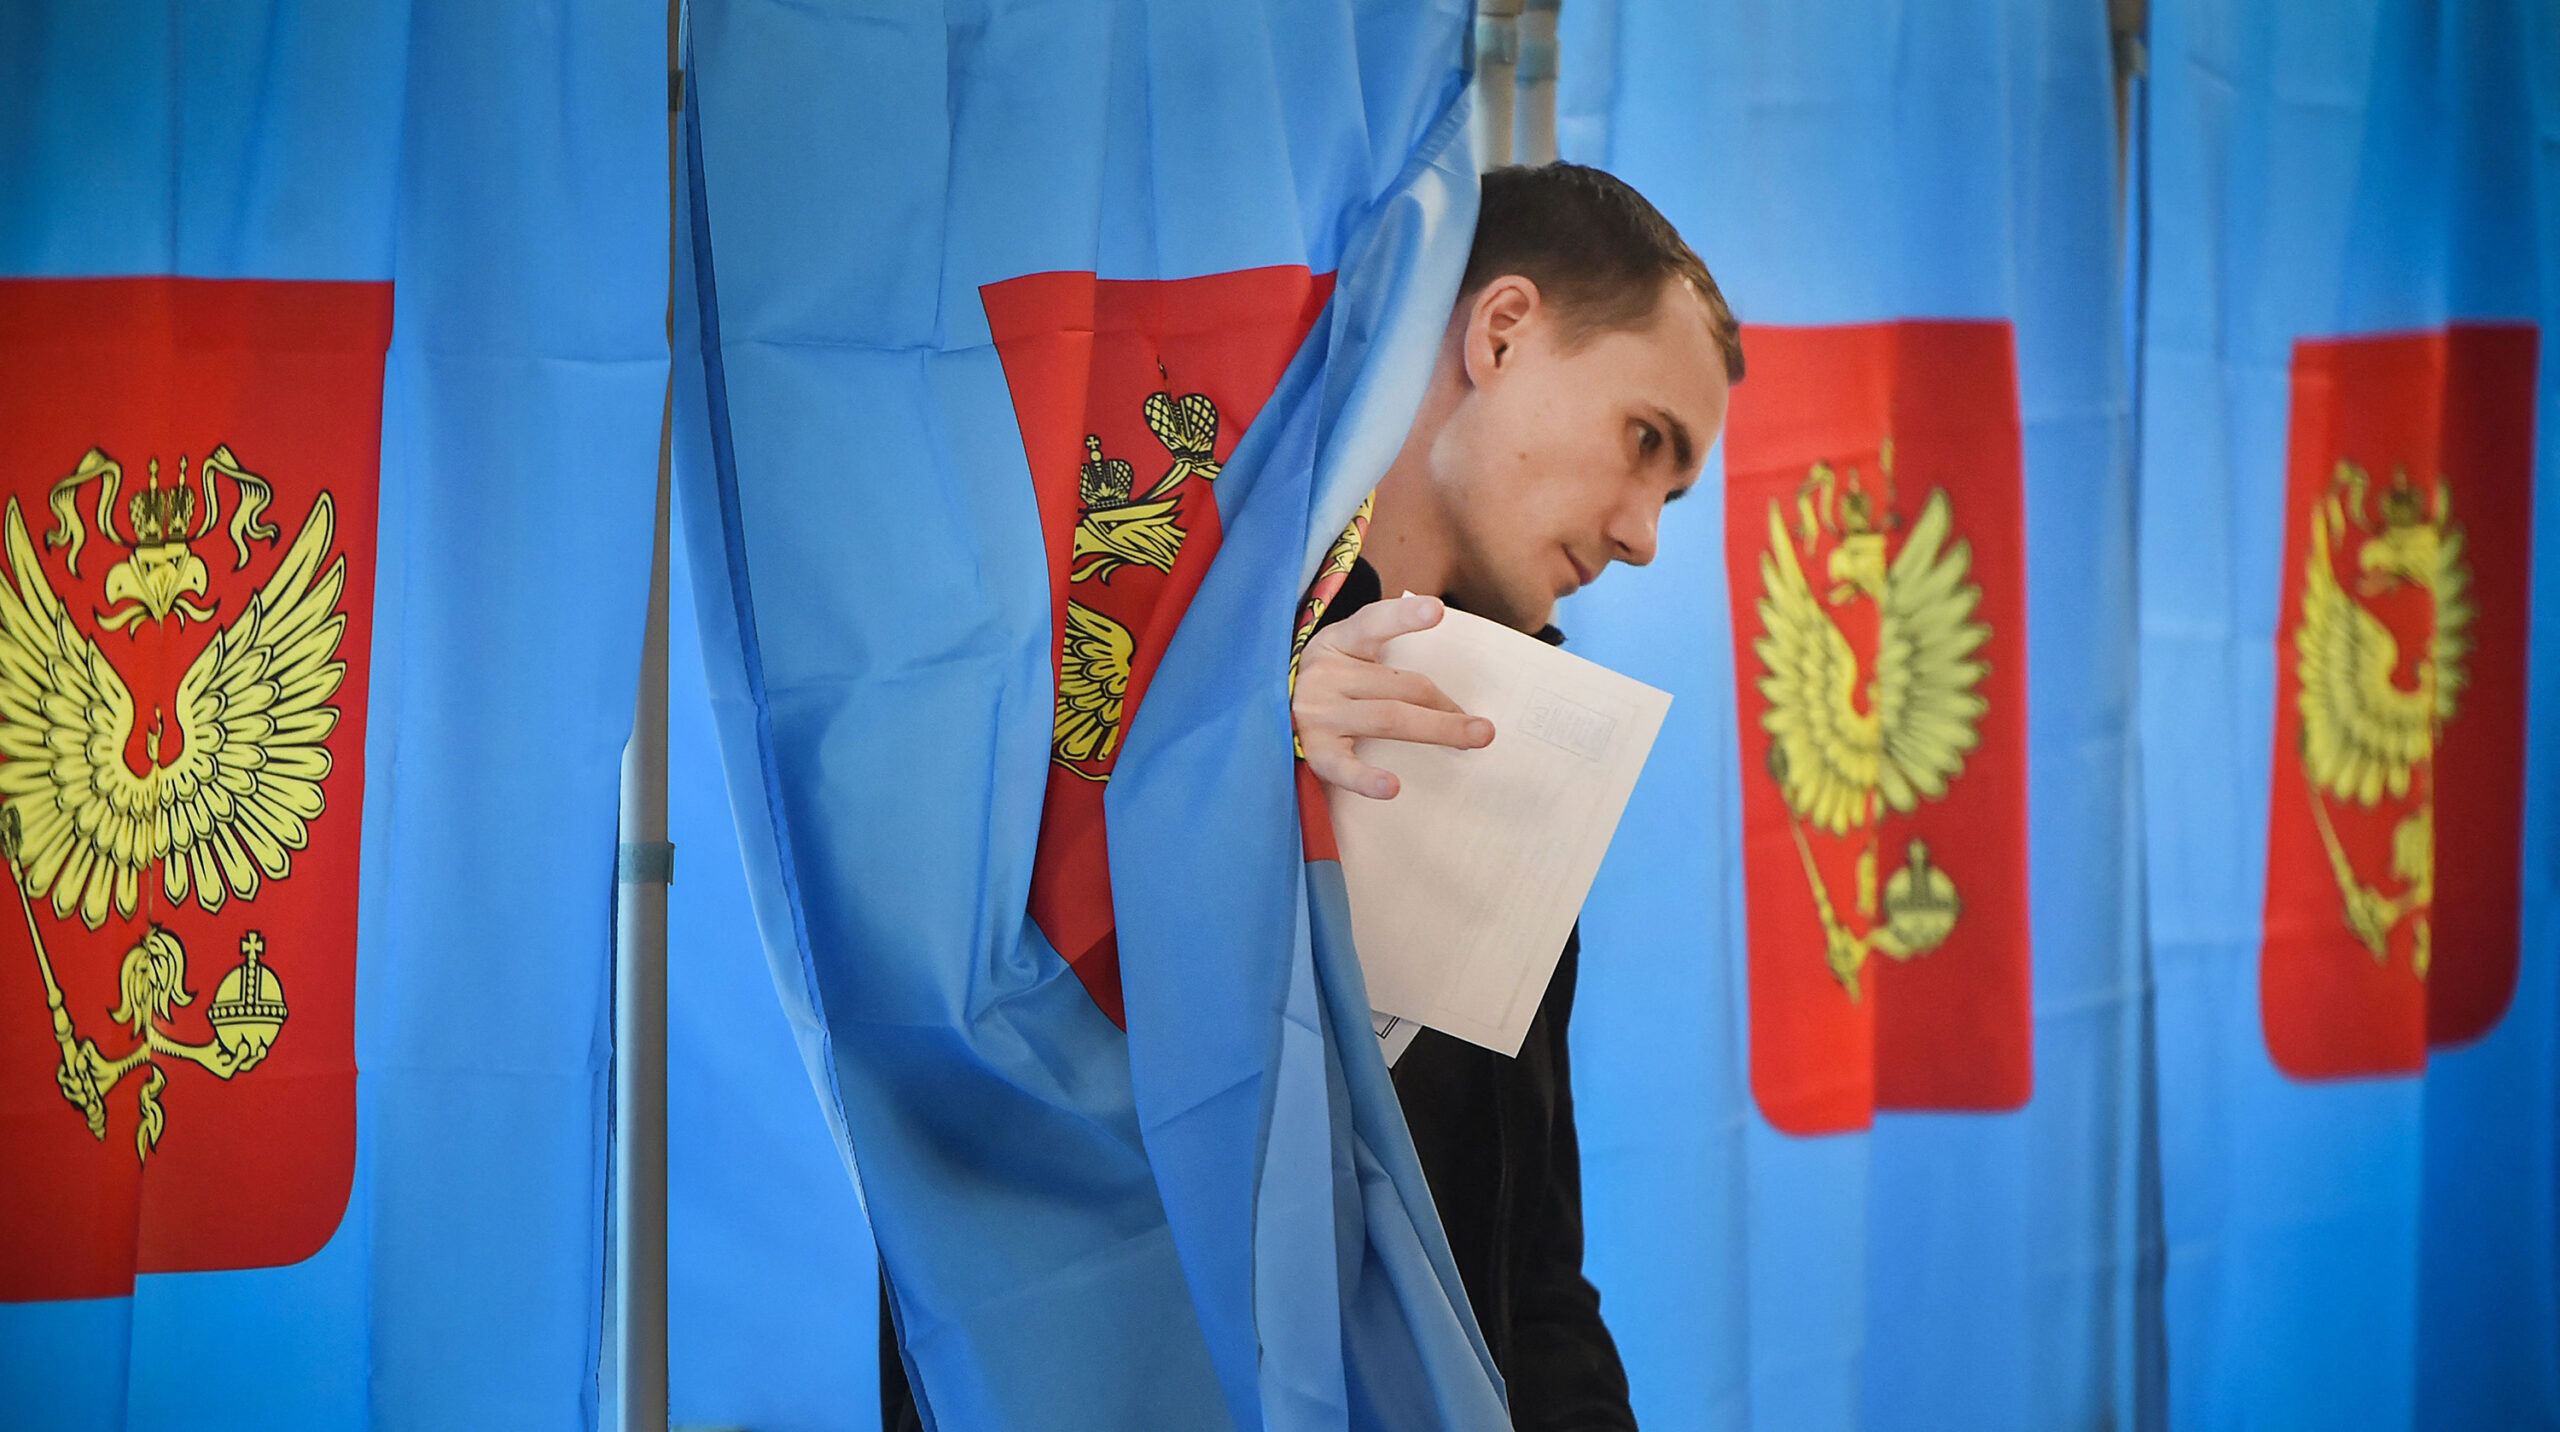 La Ue non riconosce il voto delle presidenziali russe nelle regioni dell'Ucraina nei territori occupati